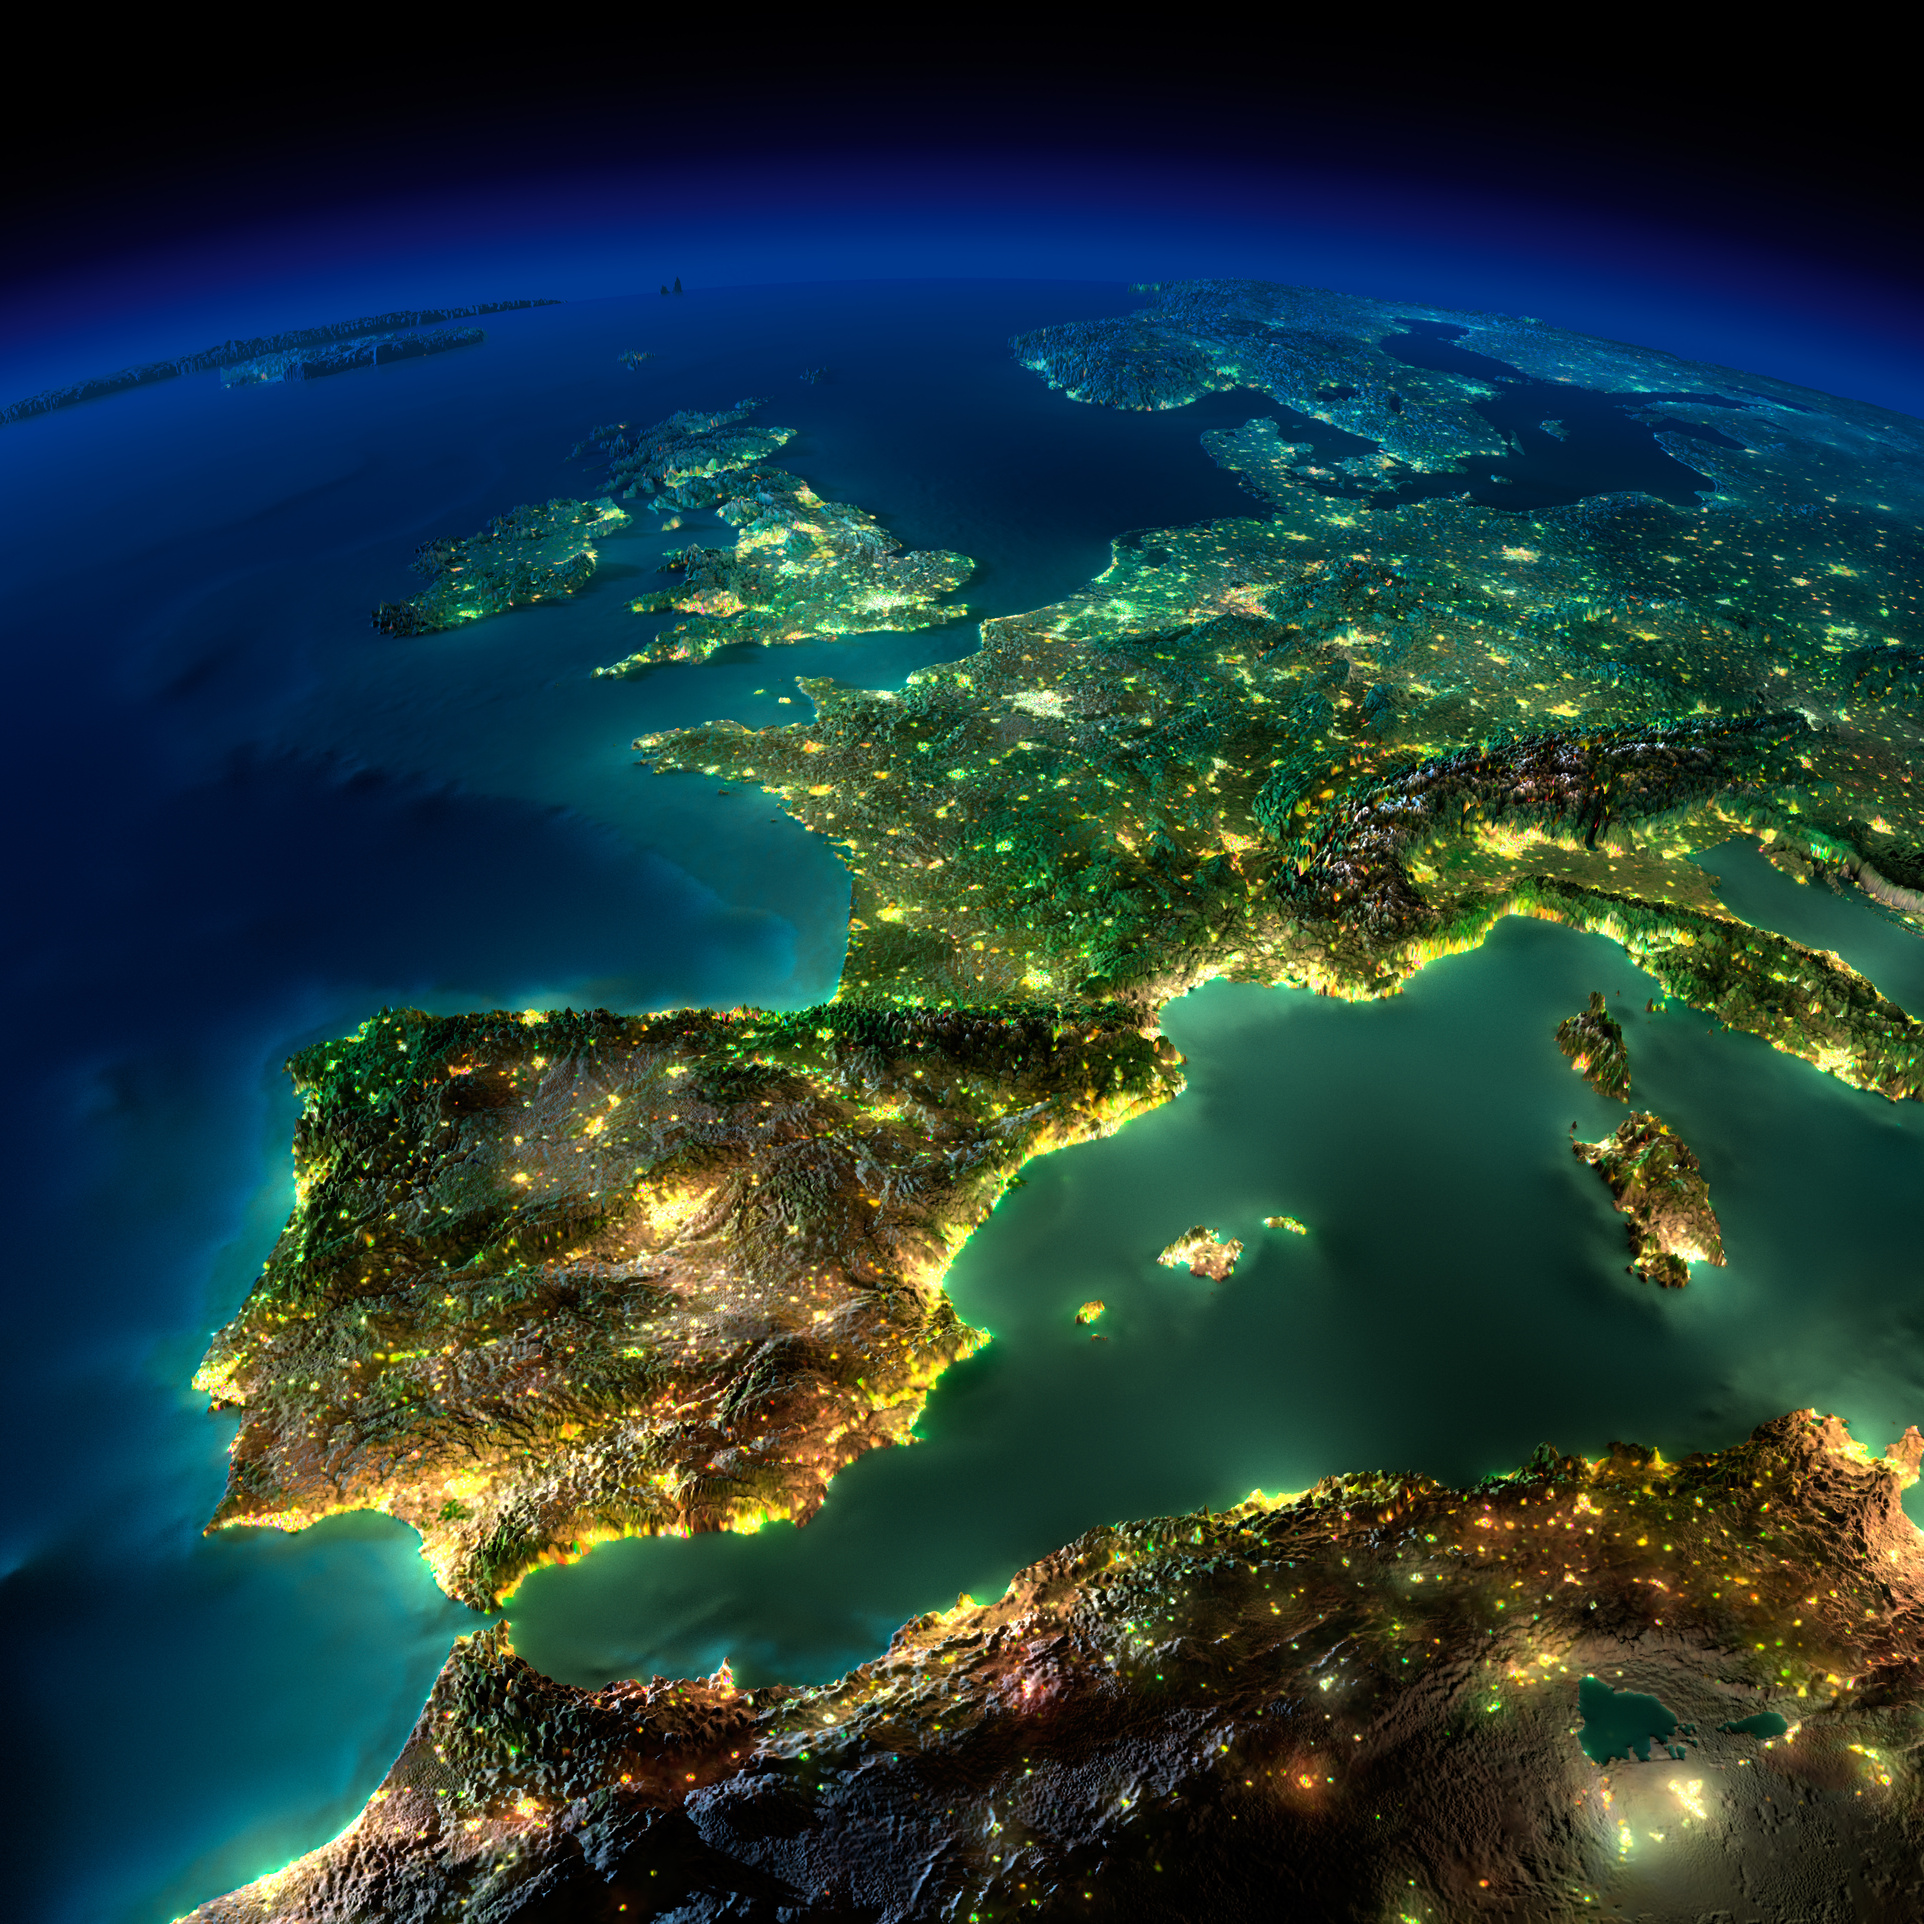 Europa bei Nacht vom Weltraum aus gesehen